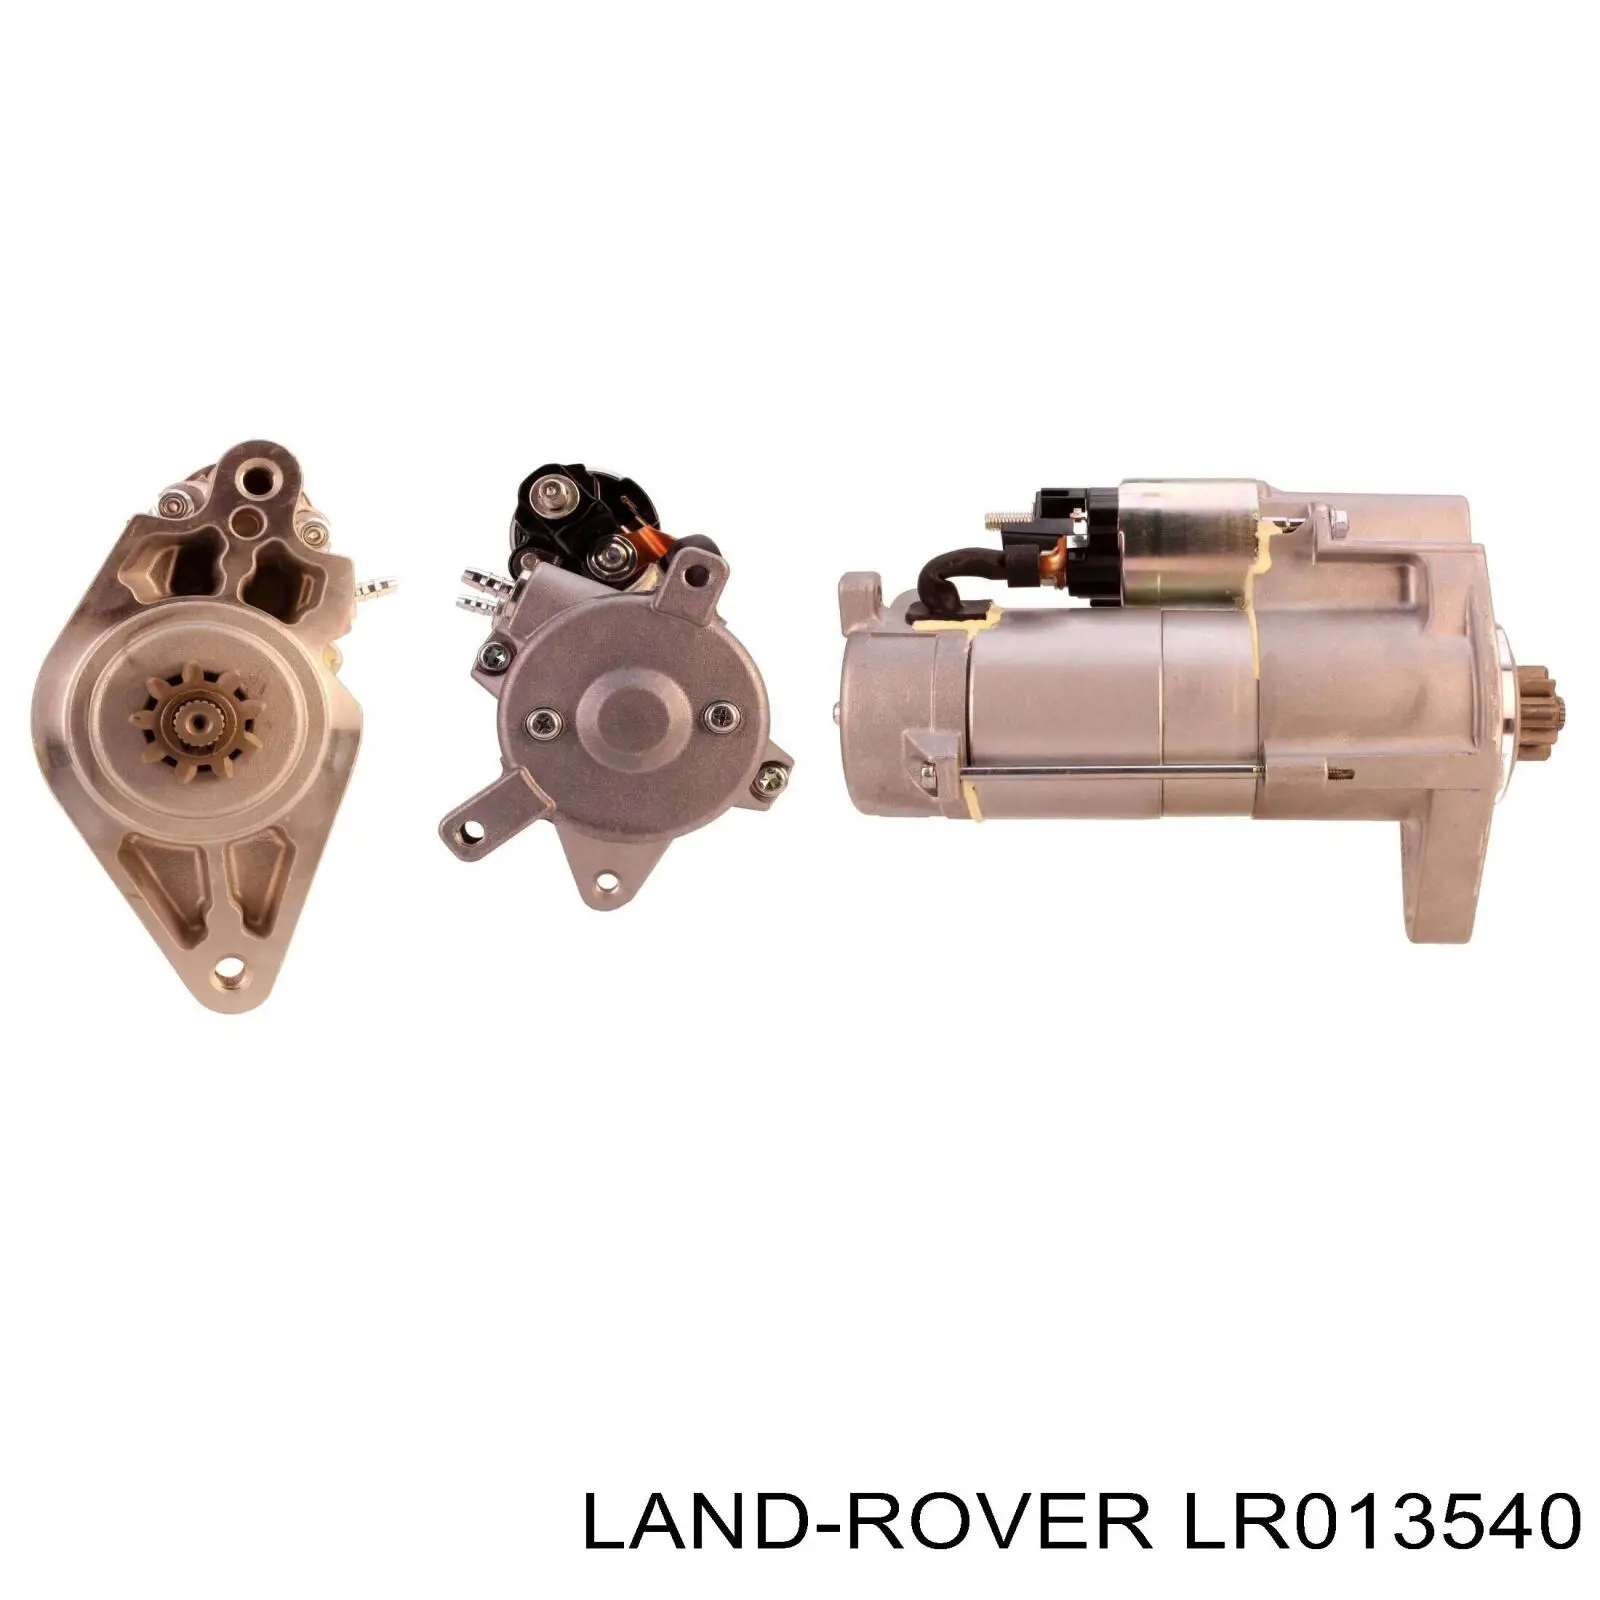 LR013540 Rover motor de arranco